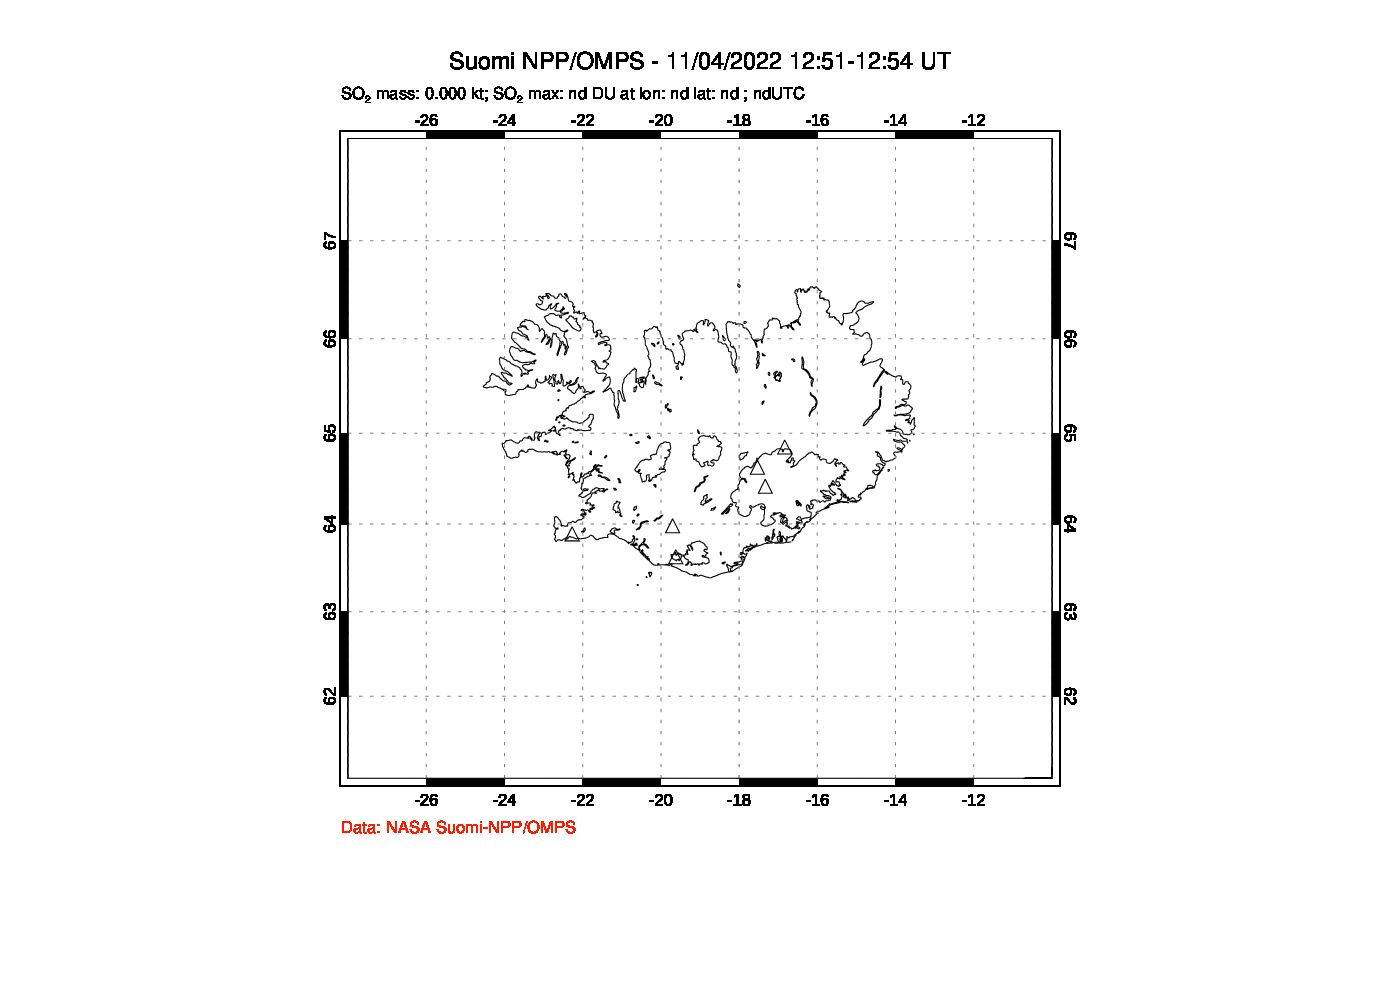 A sulfur dioxide image over Iceland on Nov 04, 2022.